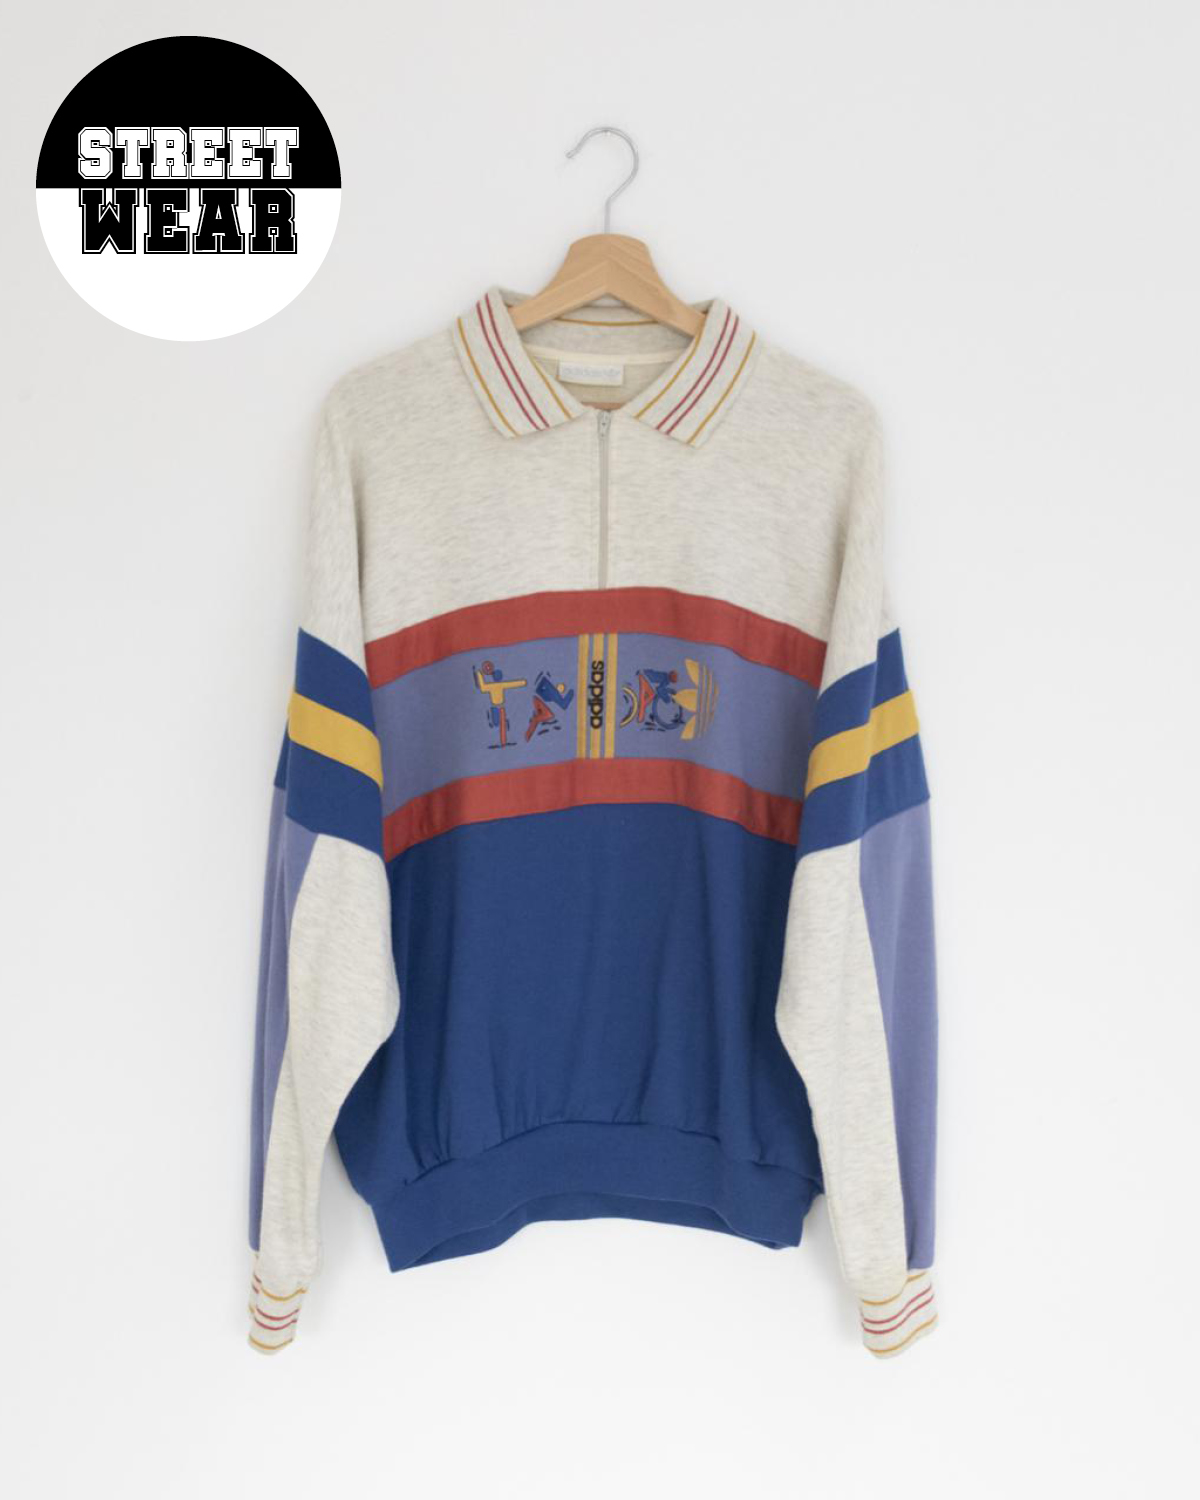 Adidas - 80s Sweatshirt